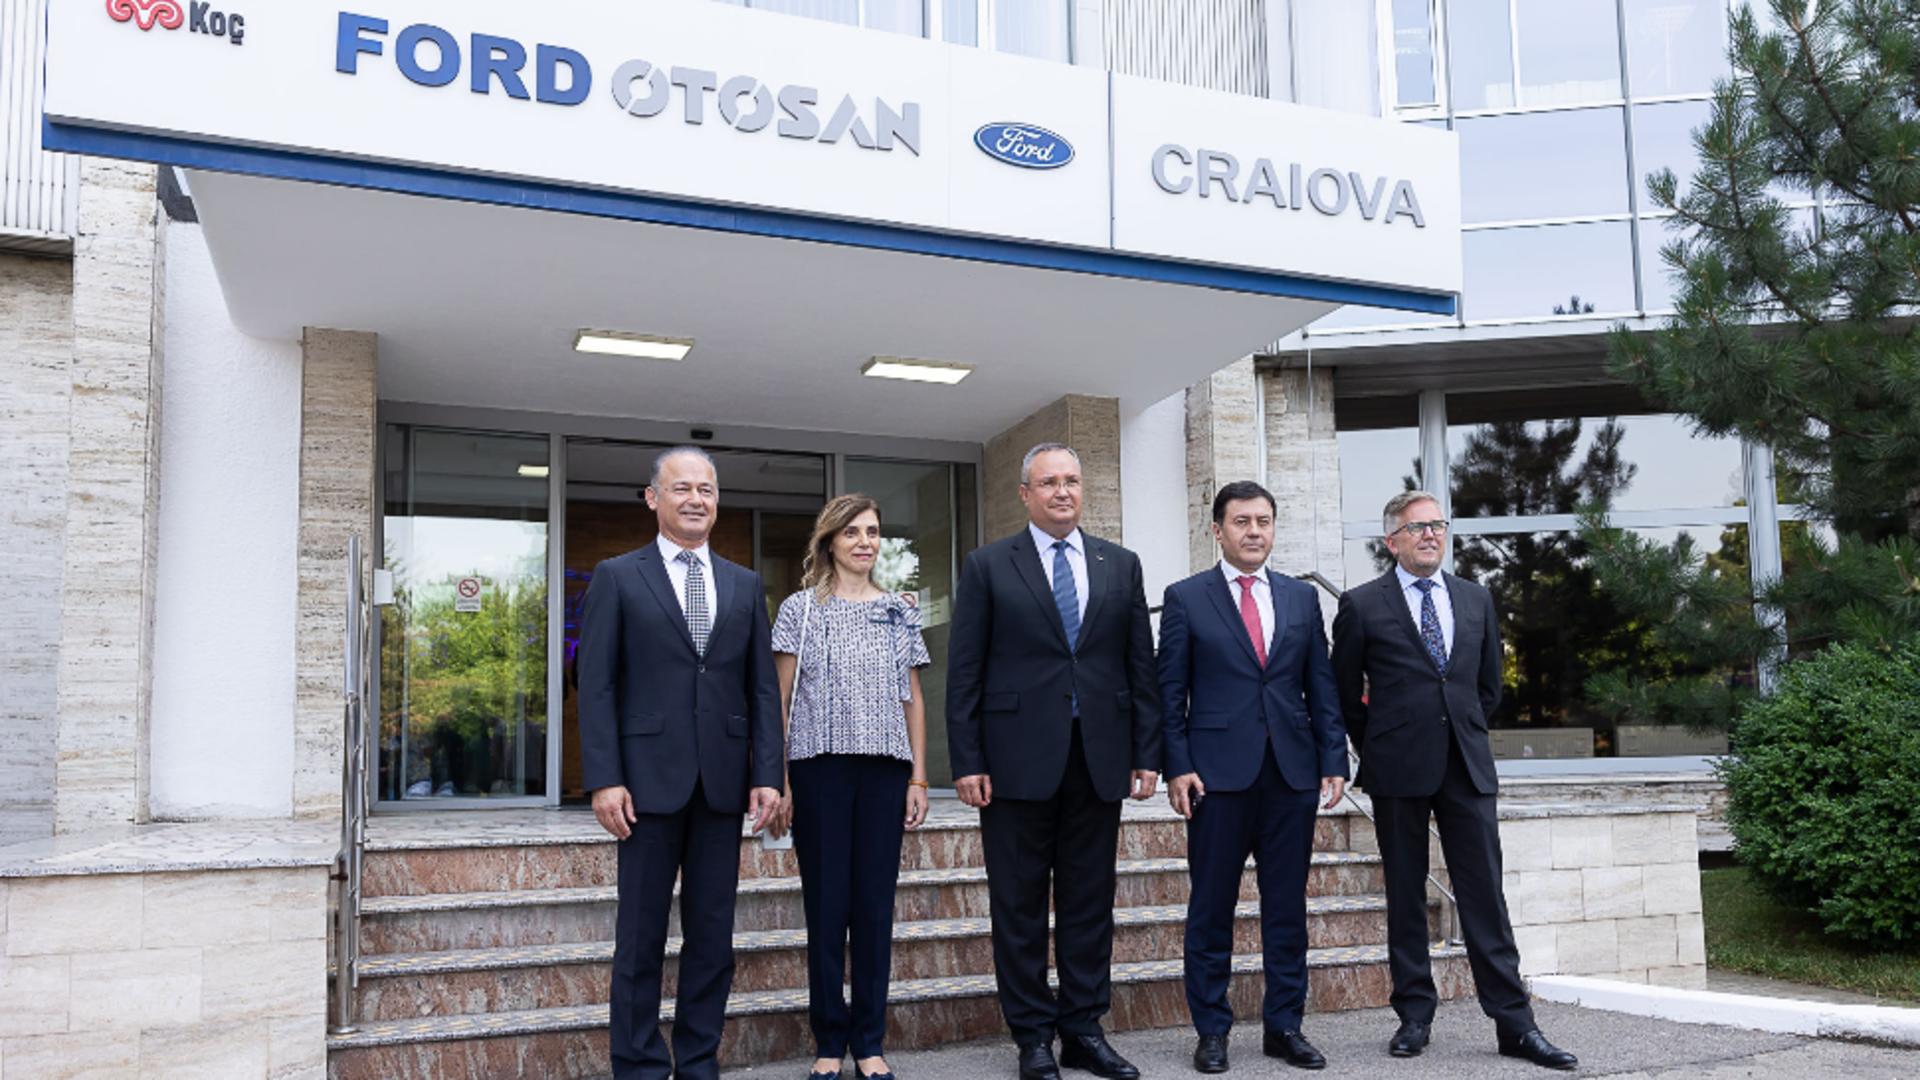 Premierul Ciucă alături de reprezentanții Ford Europa și Ford Otosan. Foto/Guvernul României